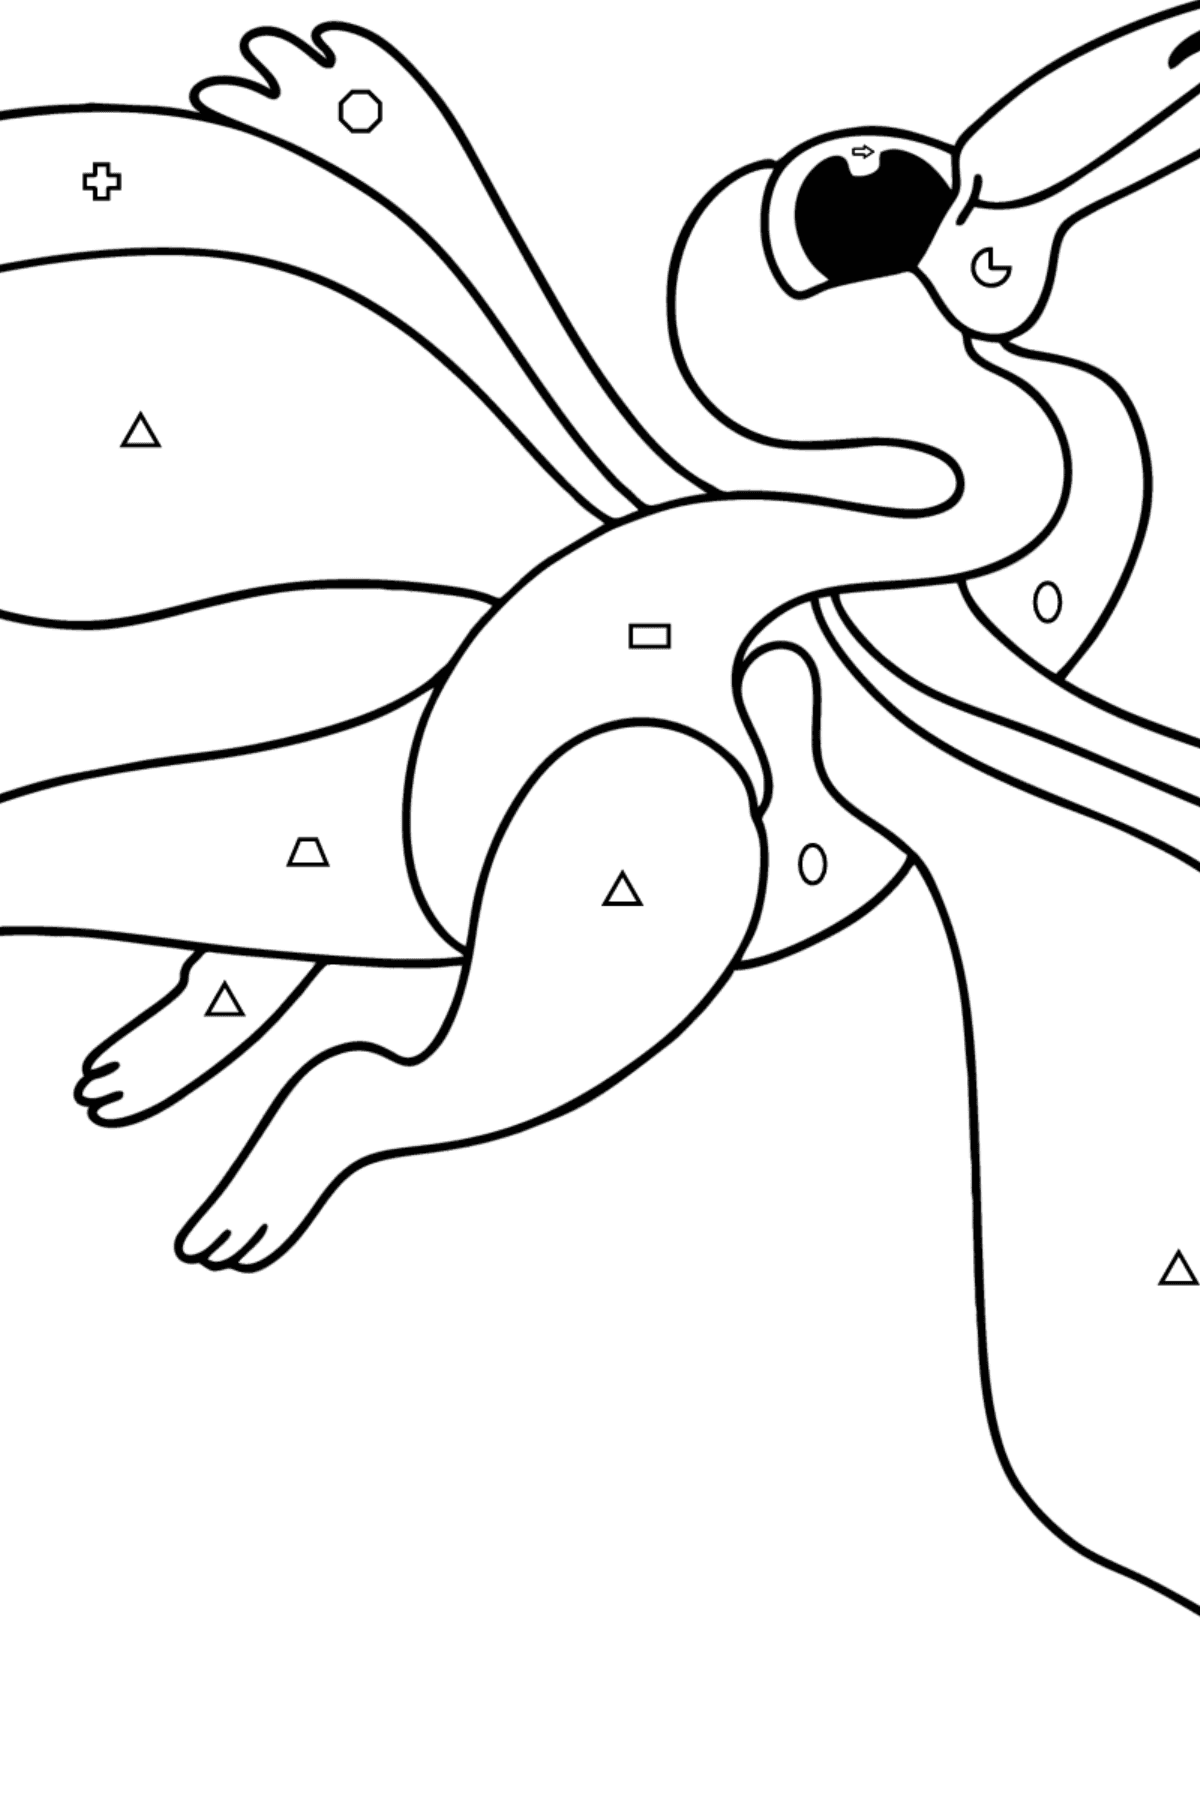 Boyama sayfası pterodaktil - Geometrik Şekillerle Boyama çocuklar için